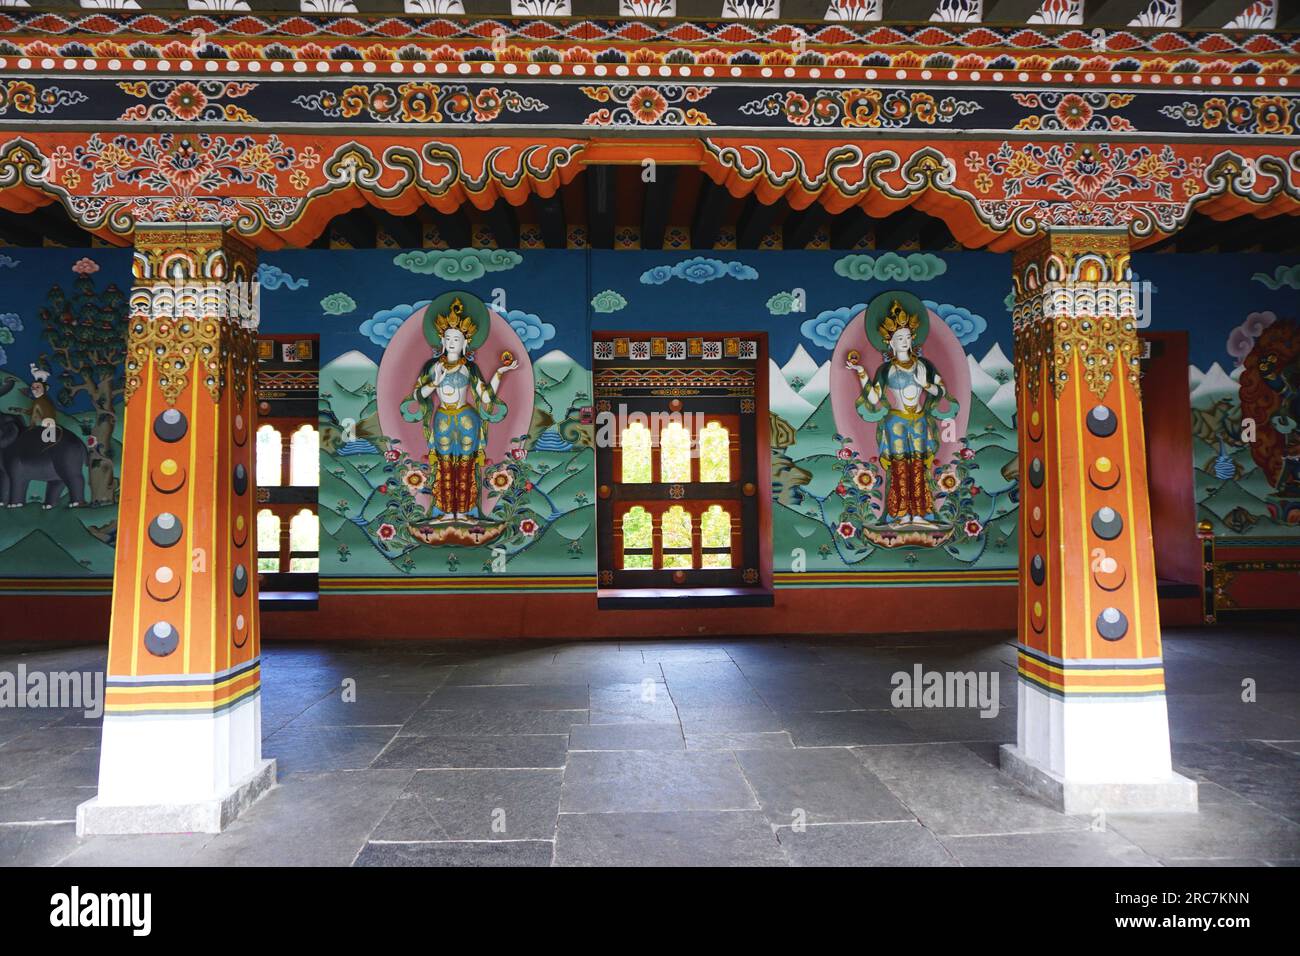 Splendidi murales dipinti e tradizionali ornamenti decorativi coprono le pareti e le colonne all'interno dello storico Tashichho Dzong a Thimphu, Bhutan. Foto Stock